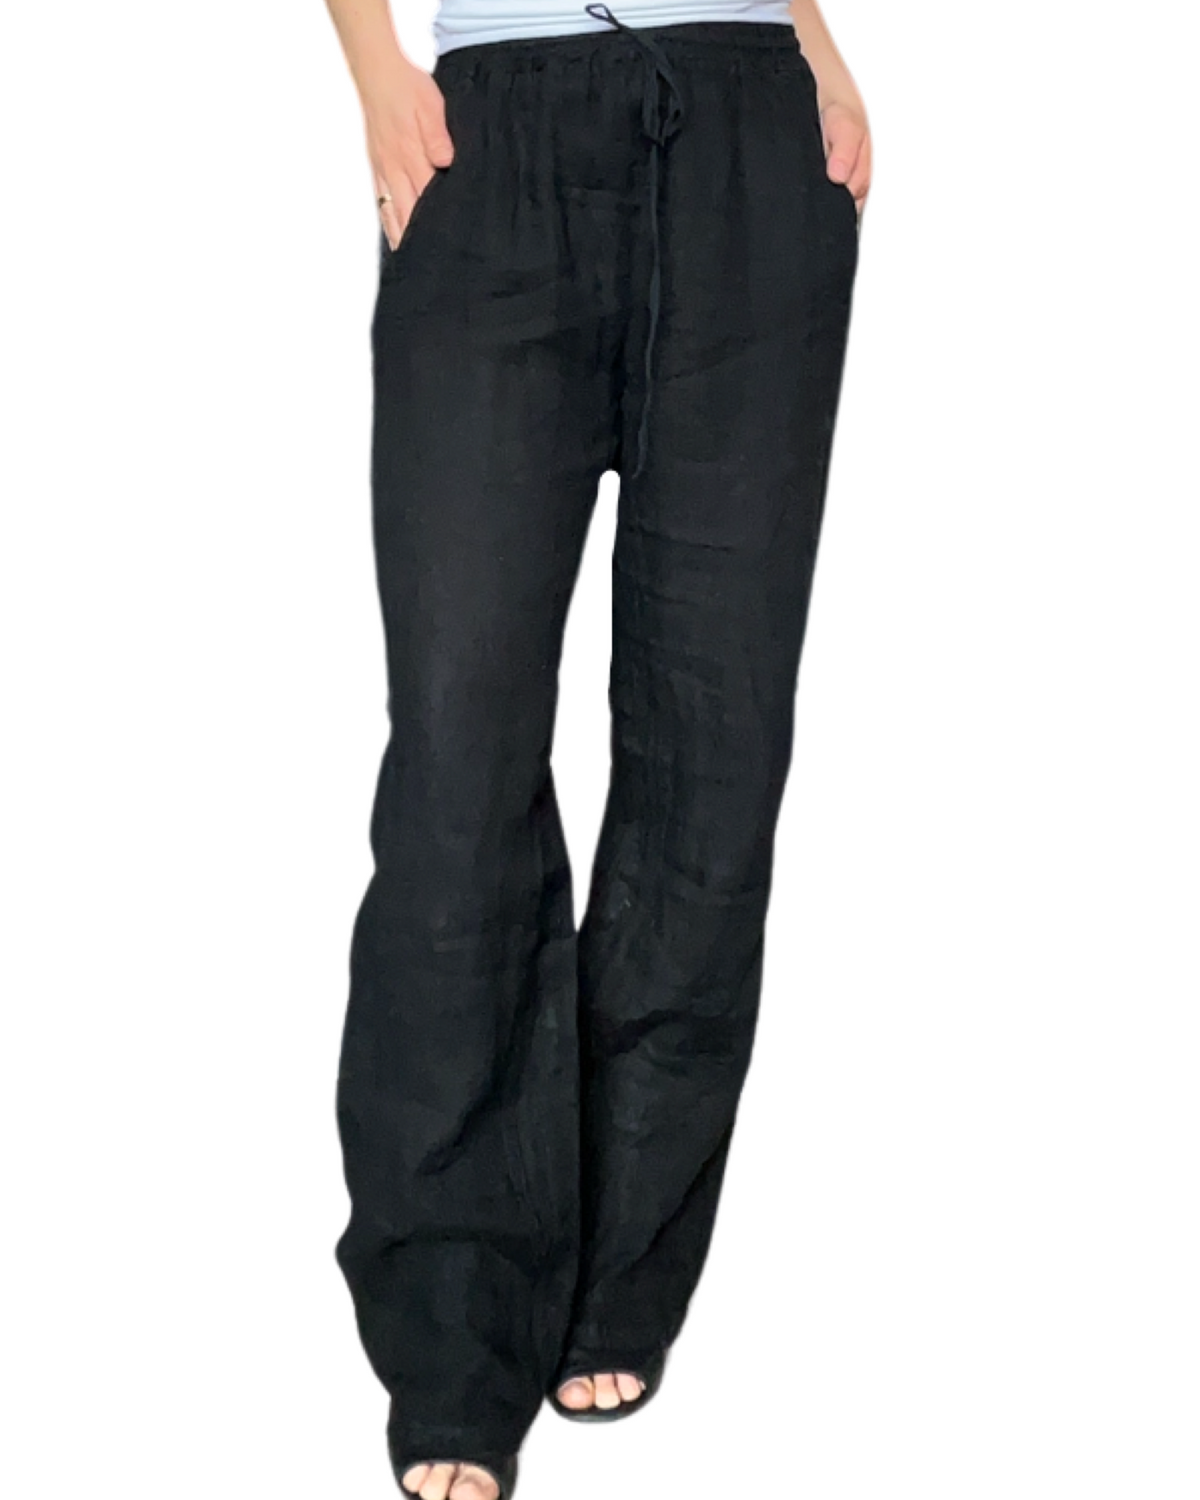 Pantalon droit noir pour femme en lin à taille élastique avec cordon.